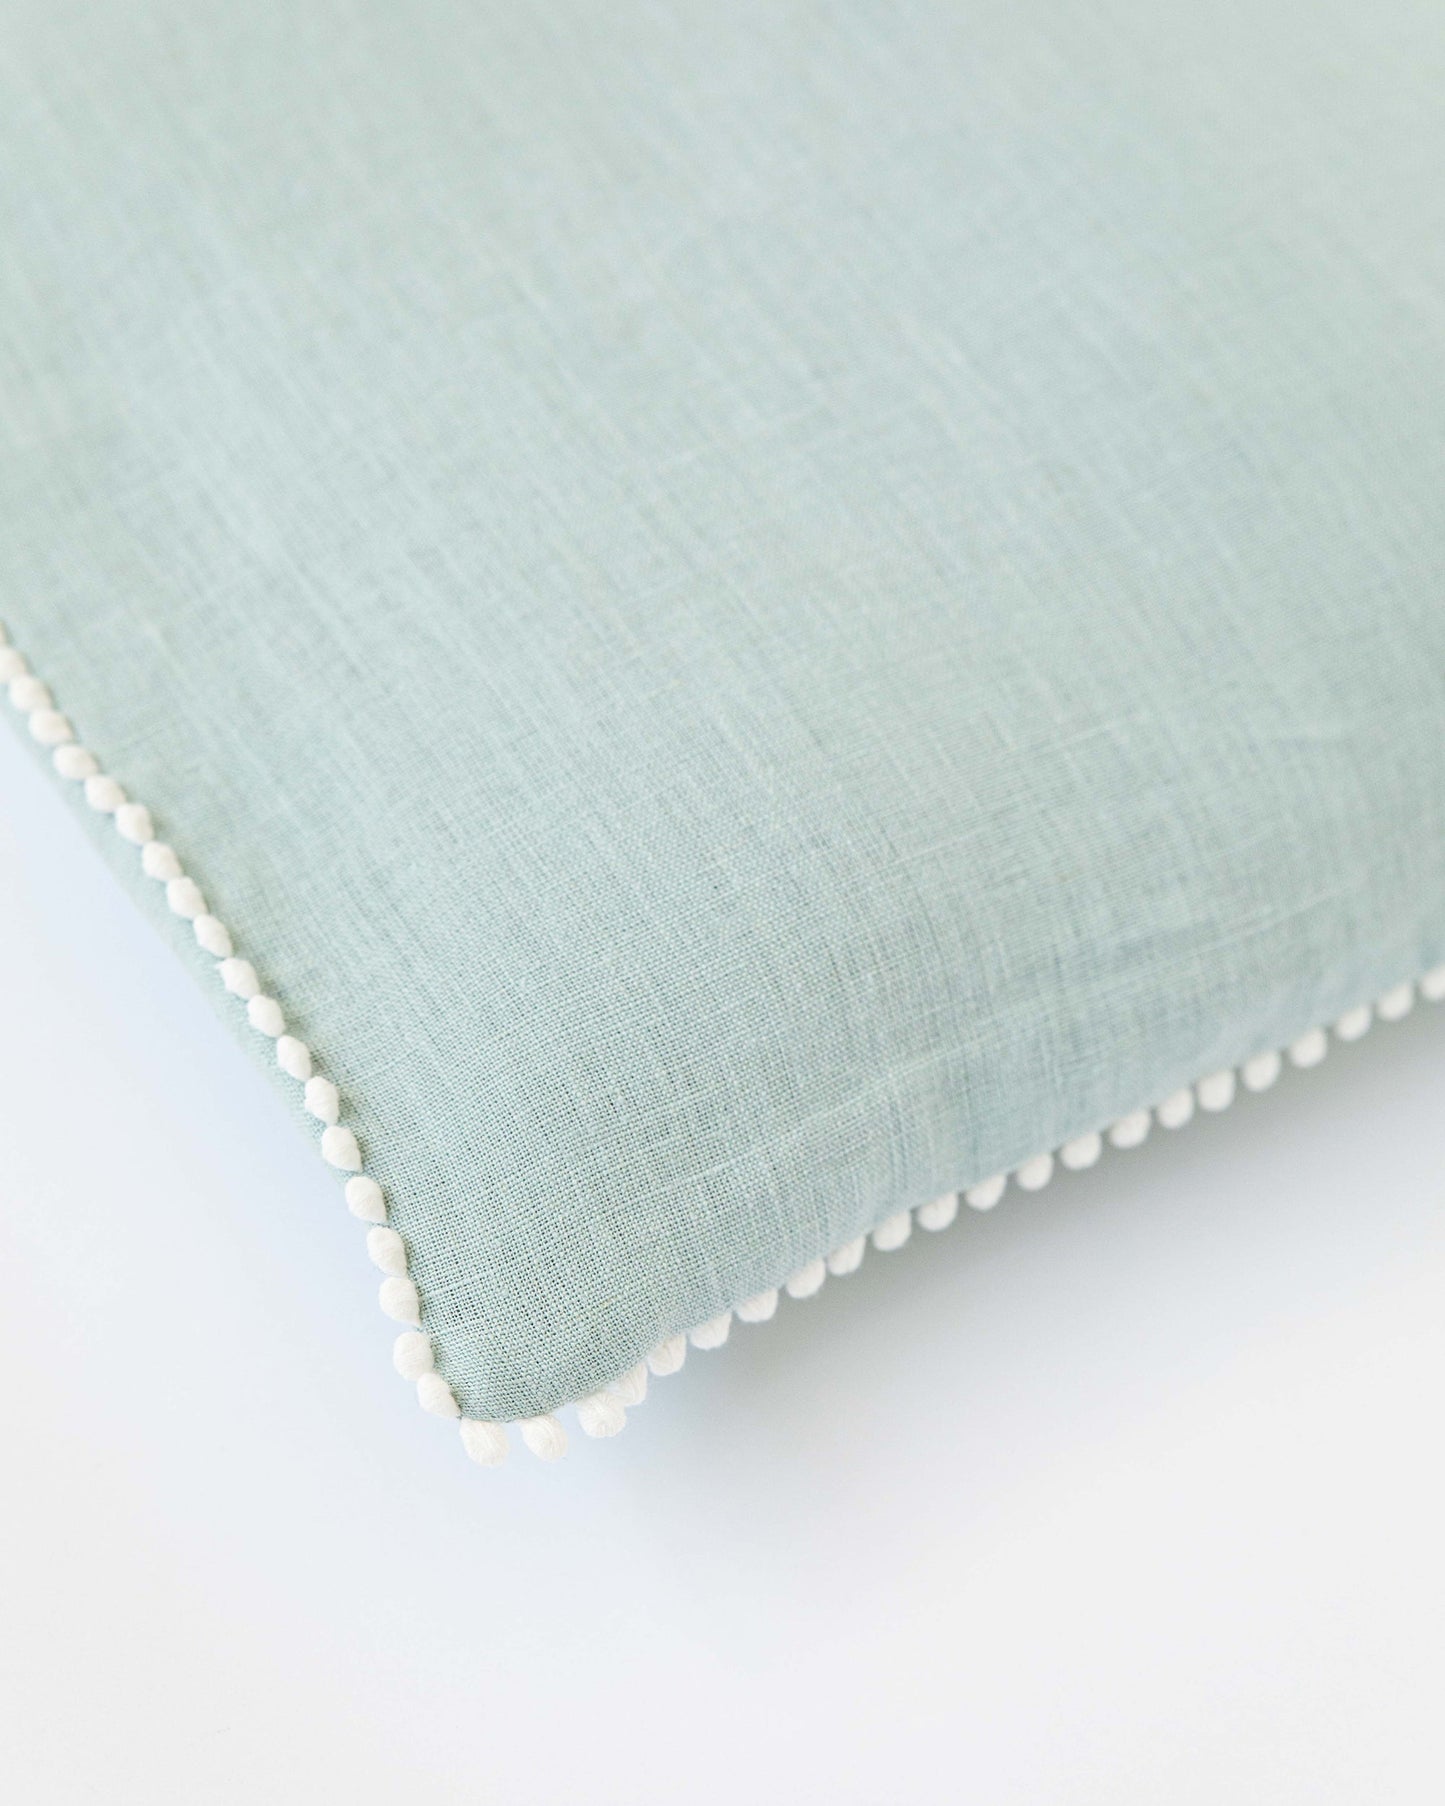 Pom pom trim linen pillowcase in Dusty Blue - MagicLinen